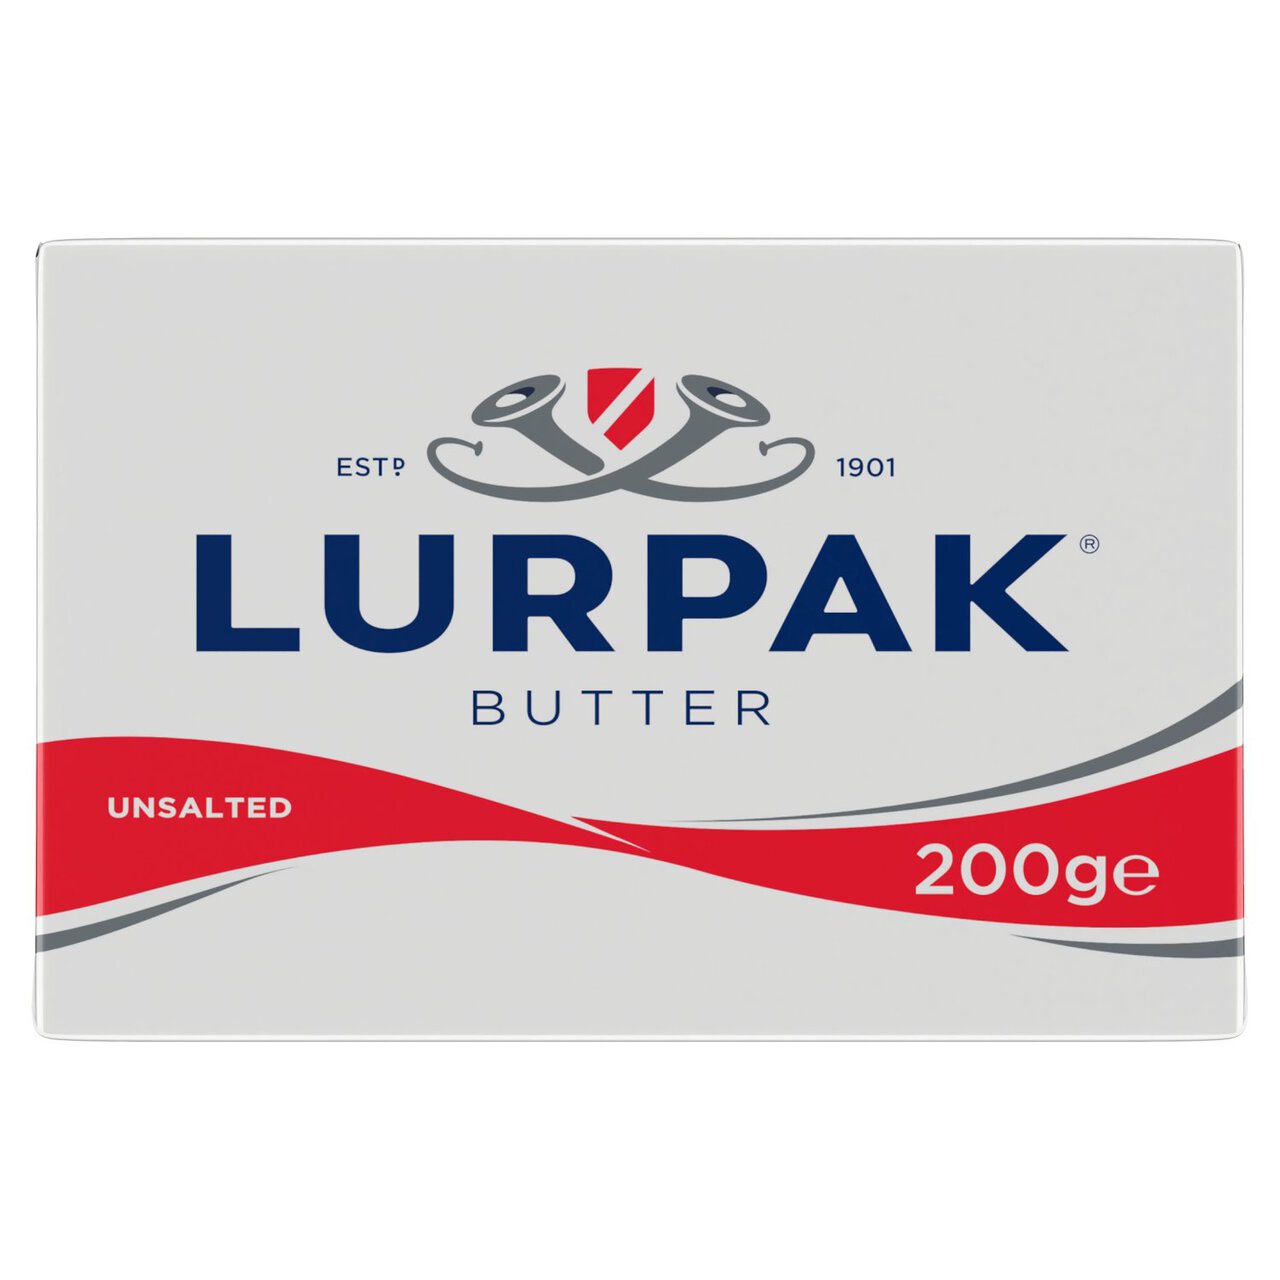 Lurpak Unsalted Butter 200g